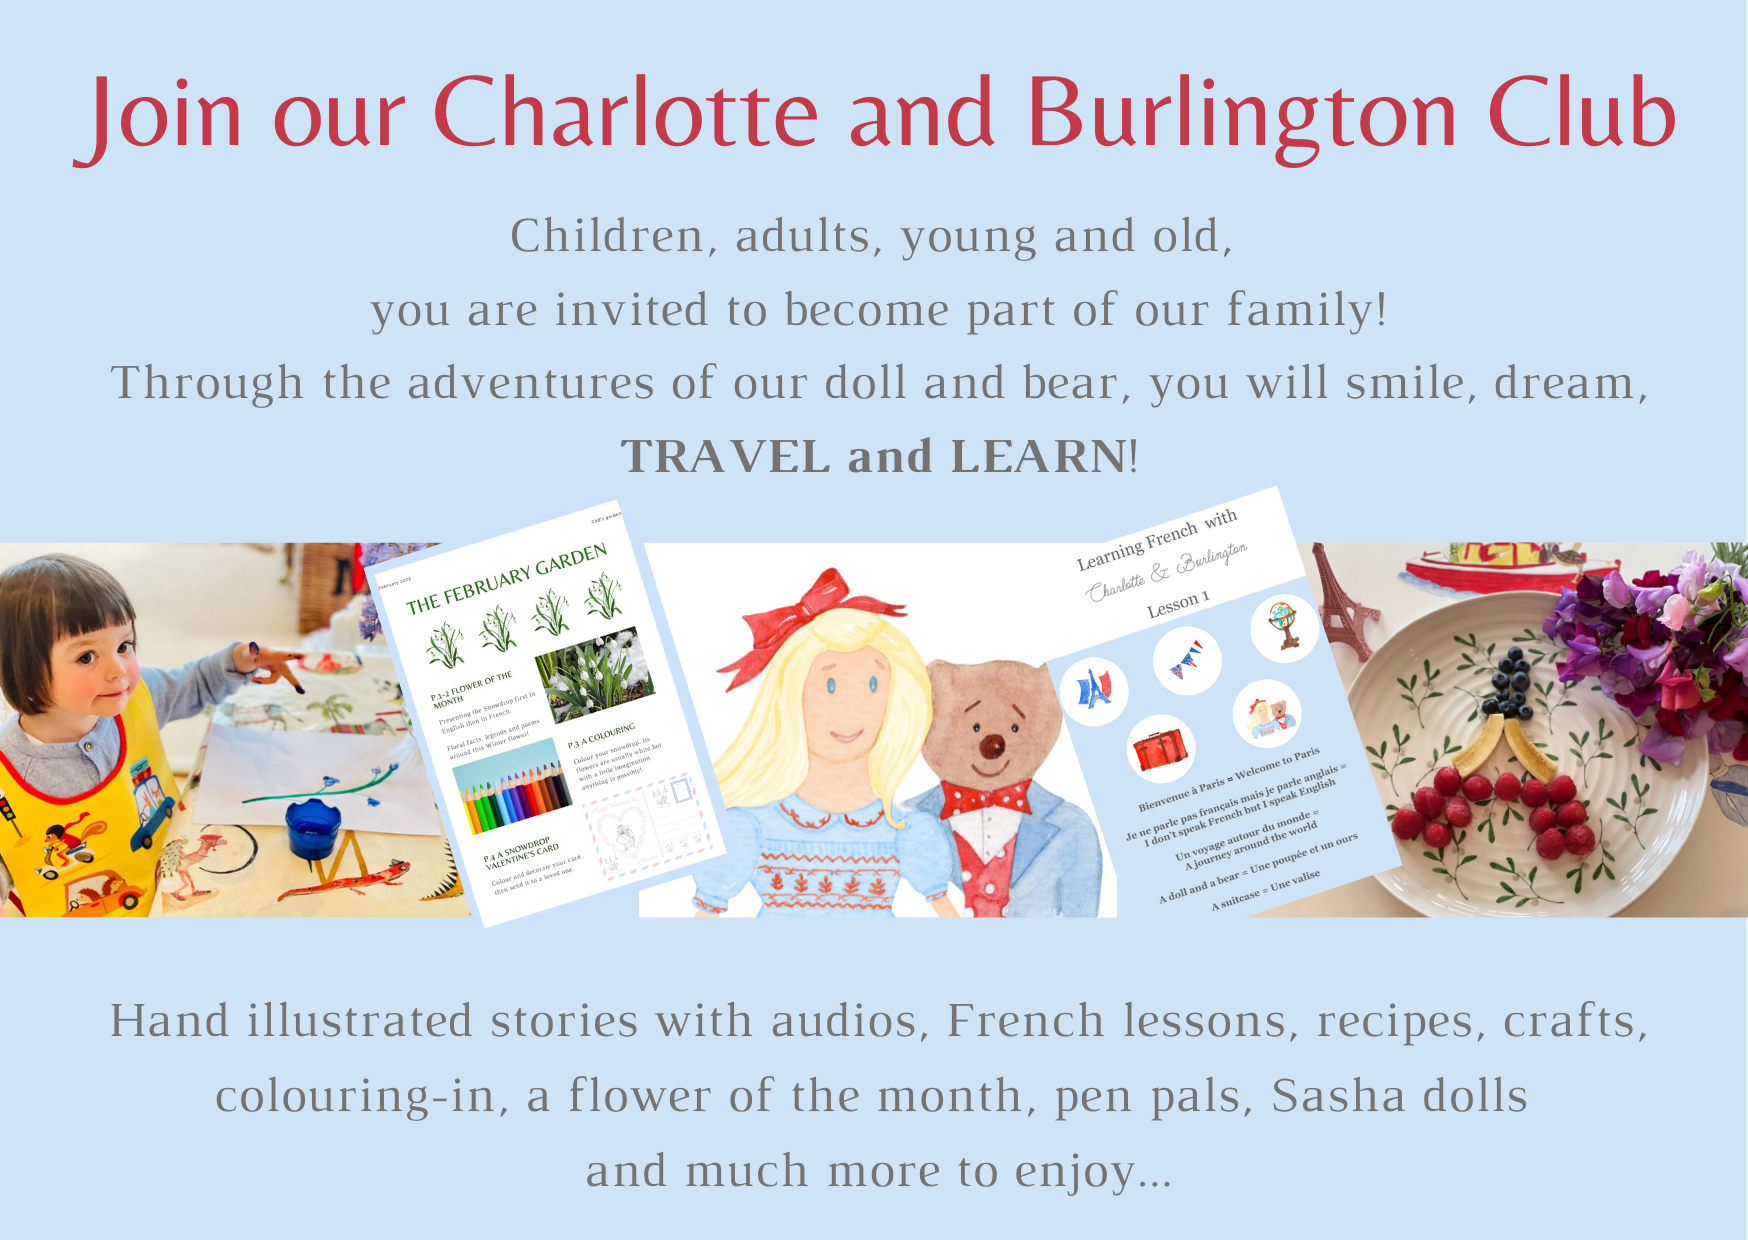 Charlotte and Burlington wildrose flower activity for children